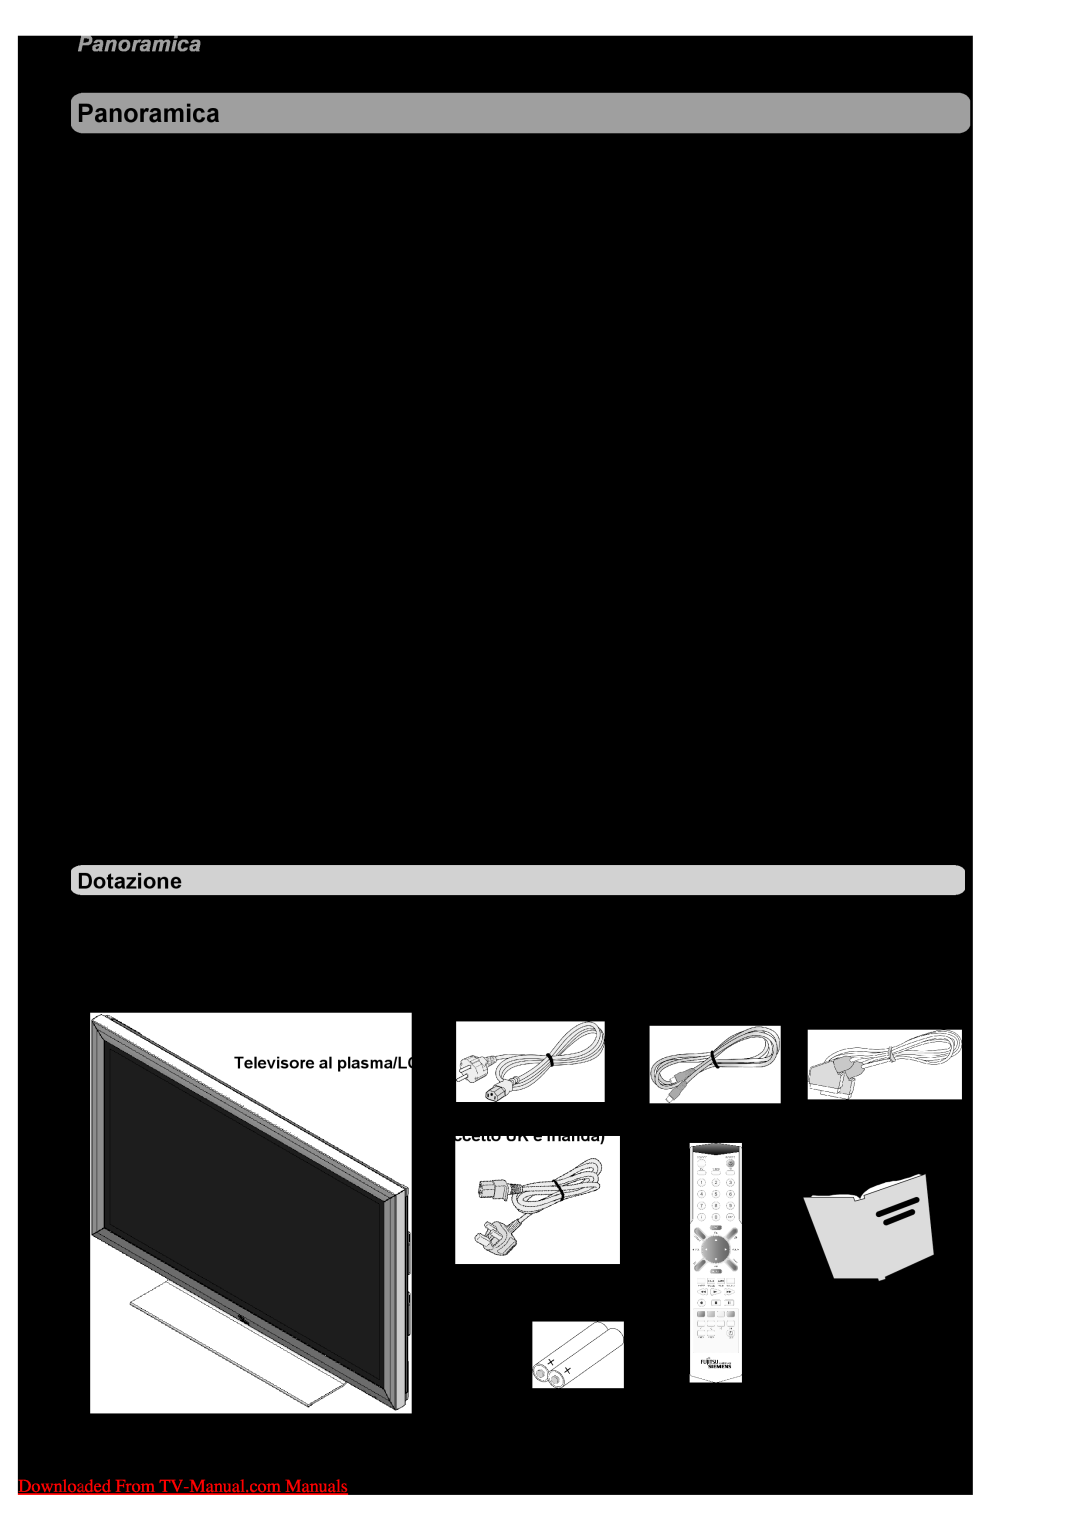 Fujitsu VQ40-1 manual Panoramica, Dotazione, Televisore al plasma/LCD, Cavo di rete per l’Europa, Cavo antenna, Cavo SCART 